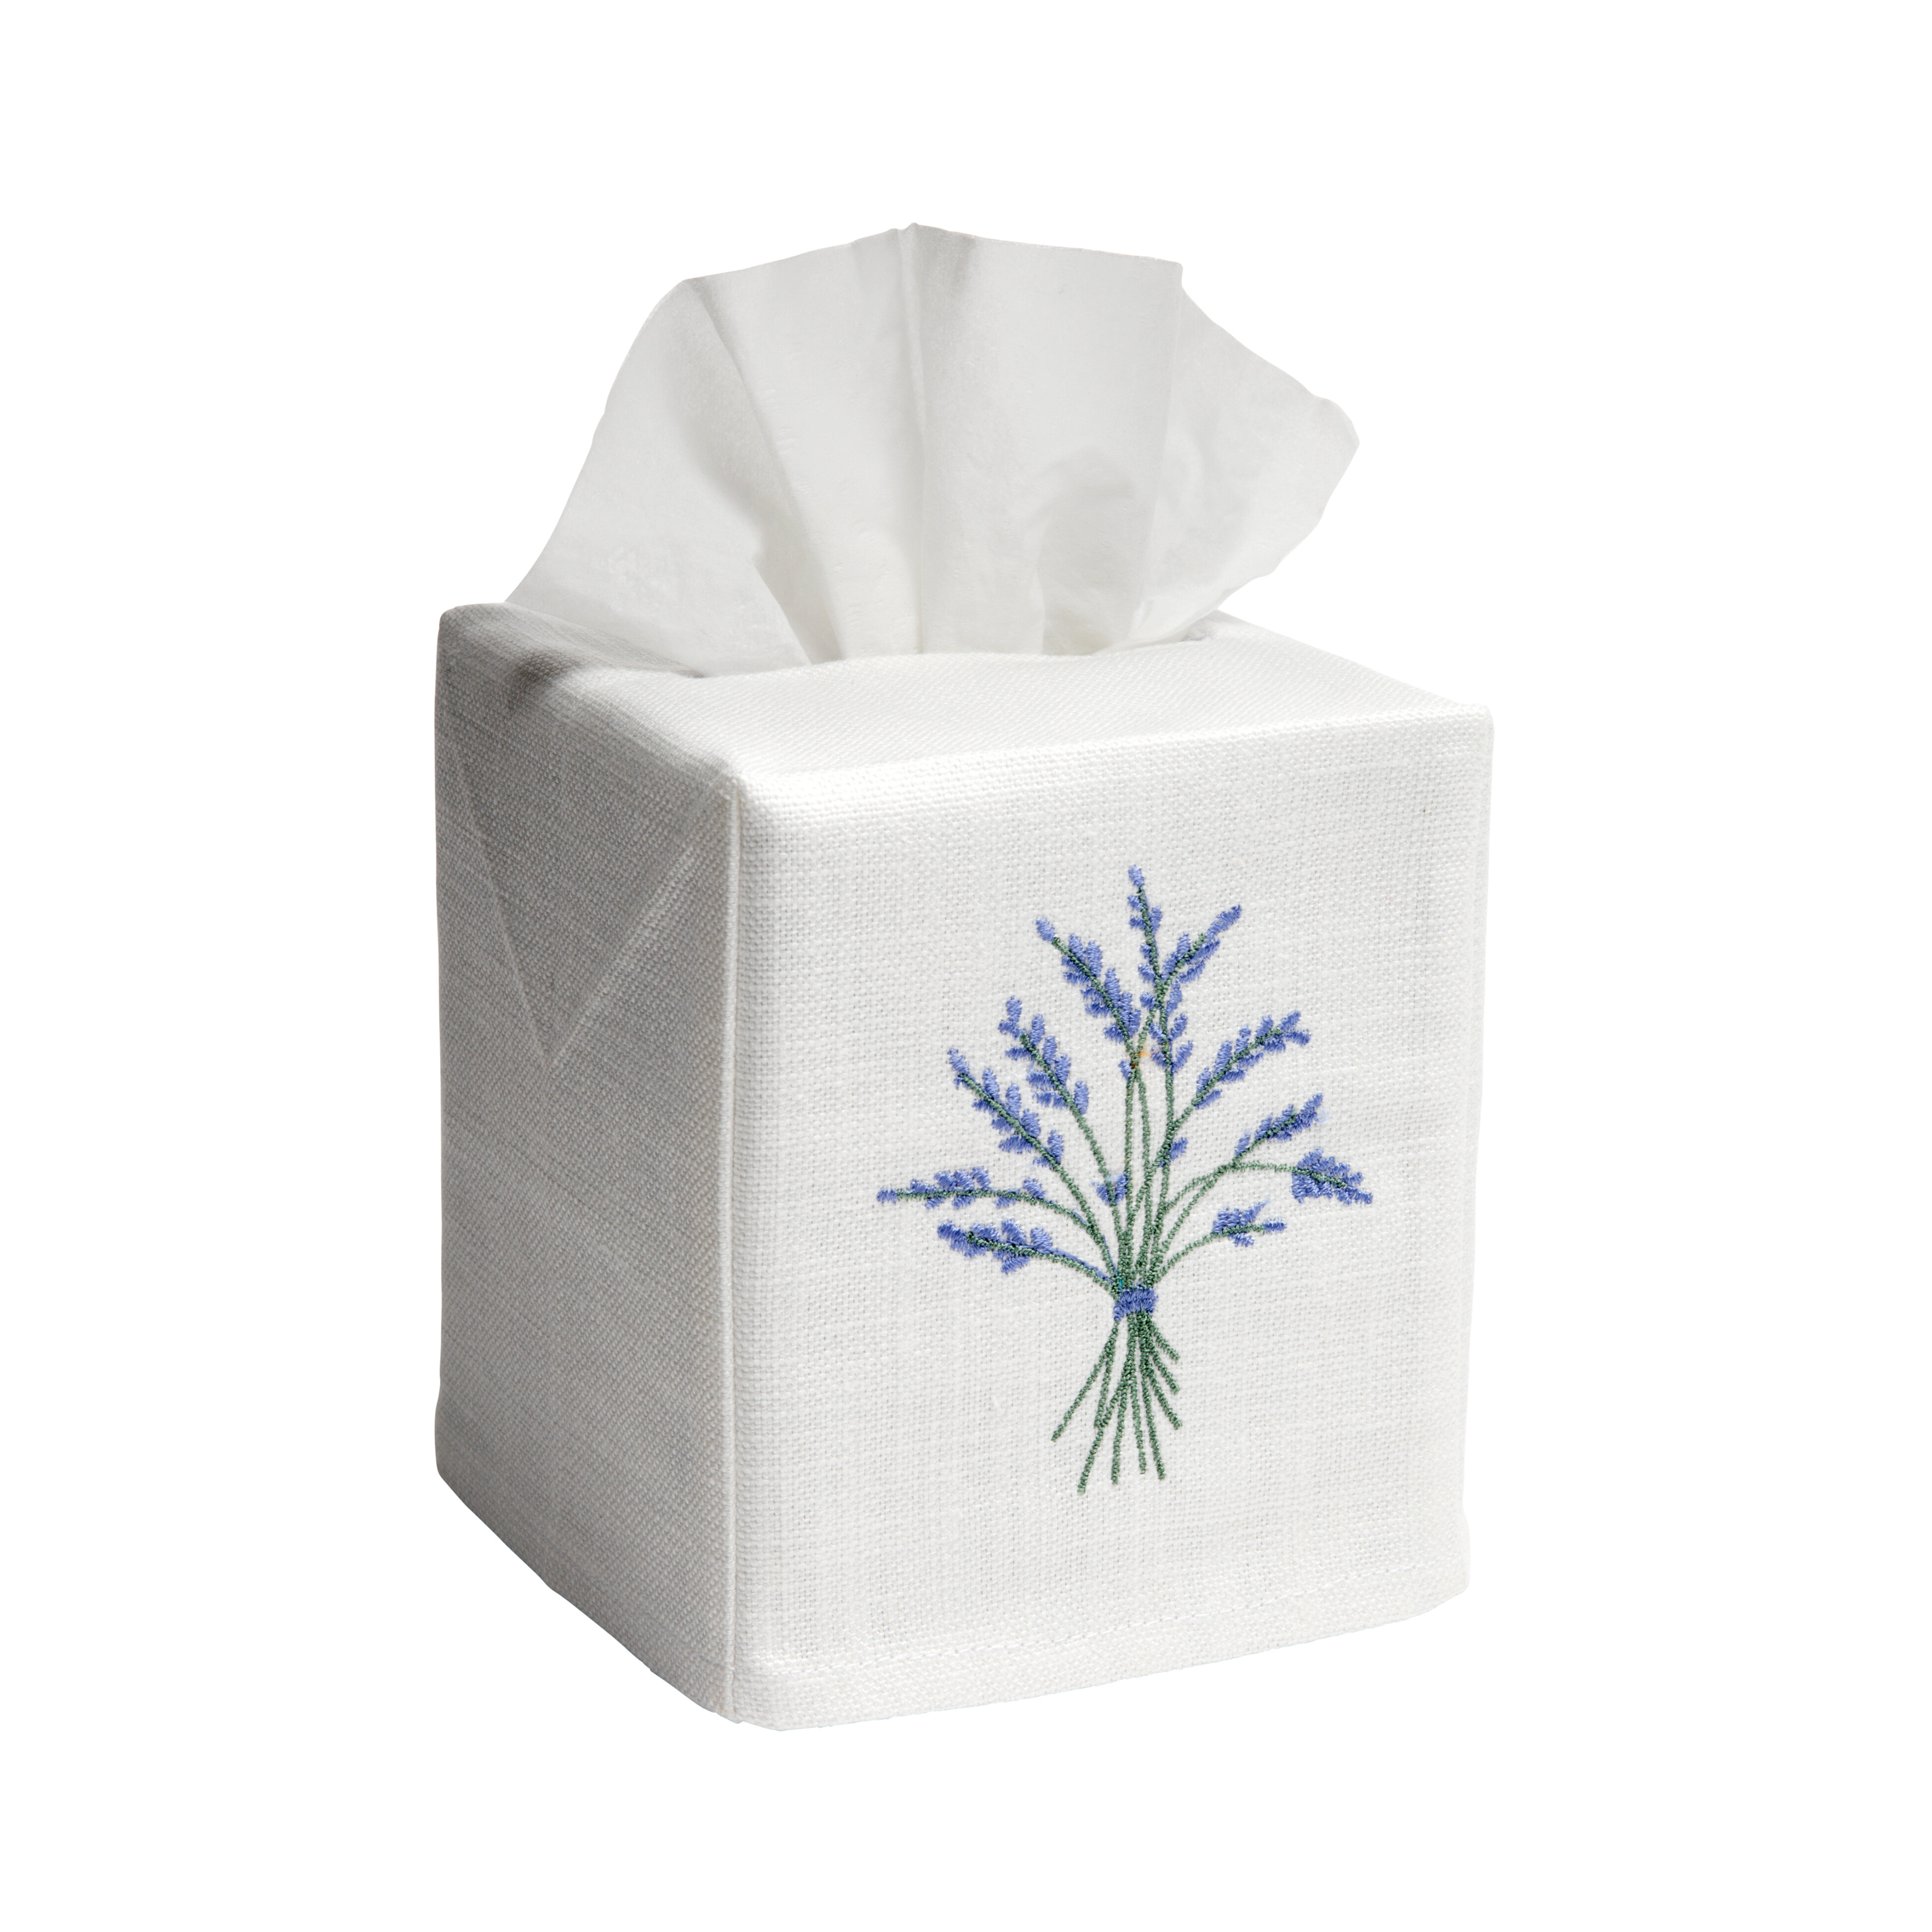 lavender tissue box cover